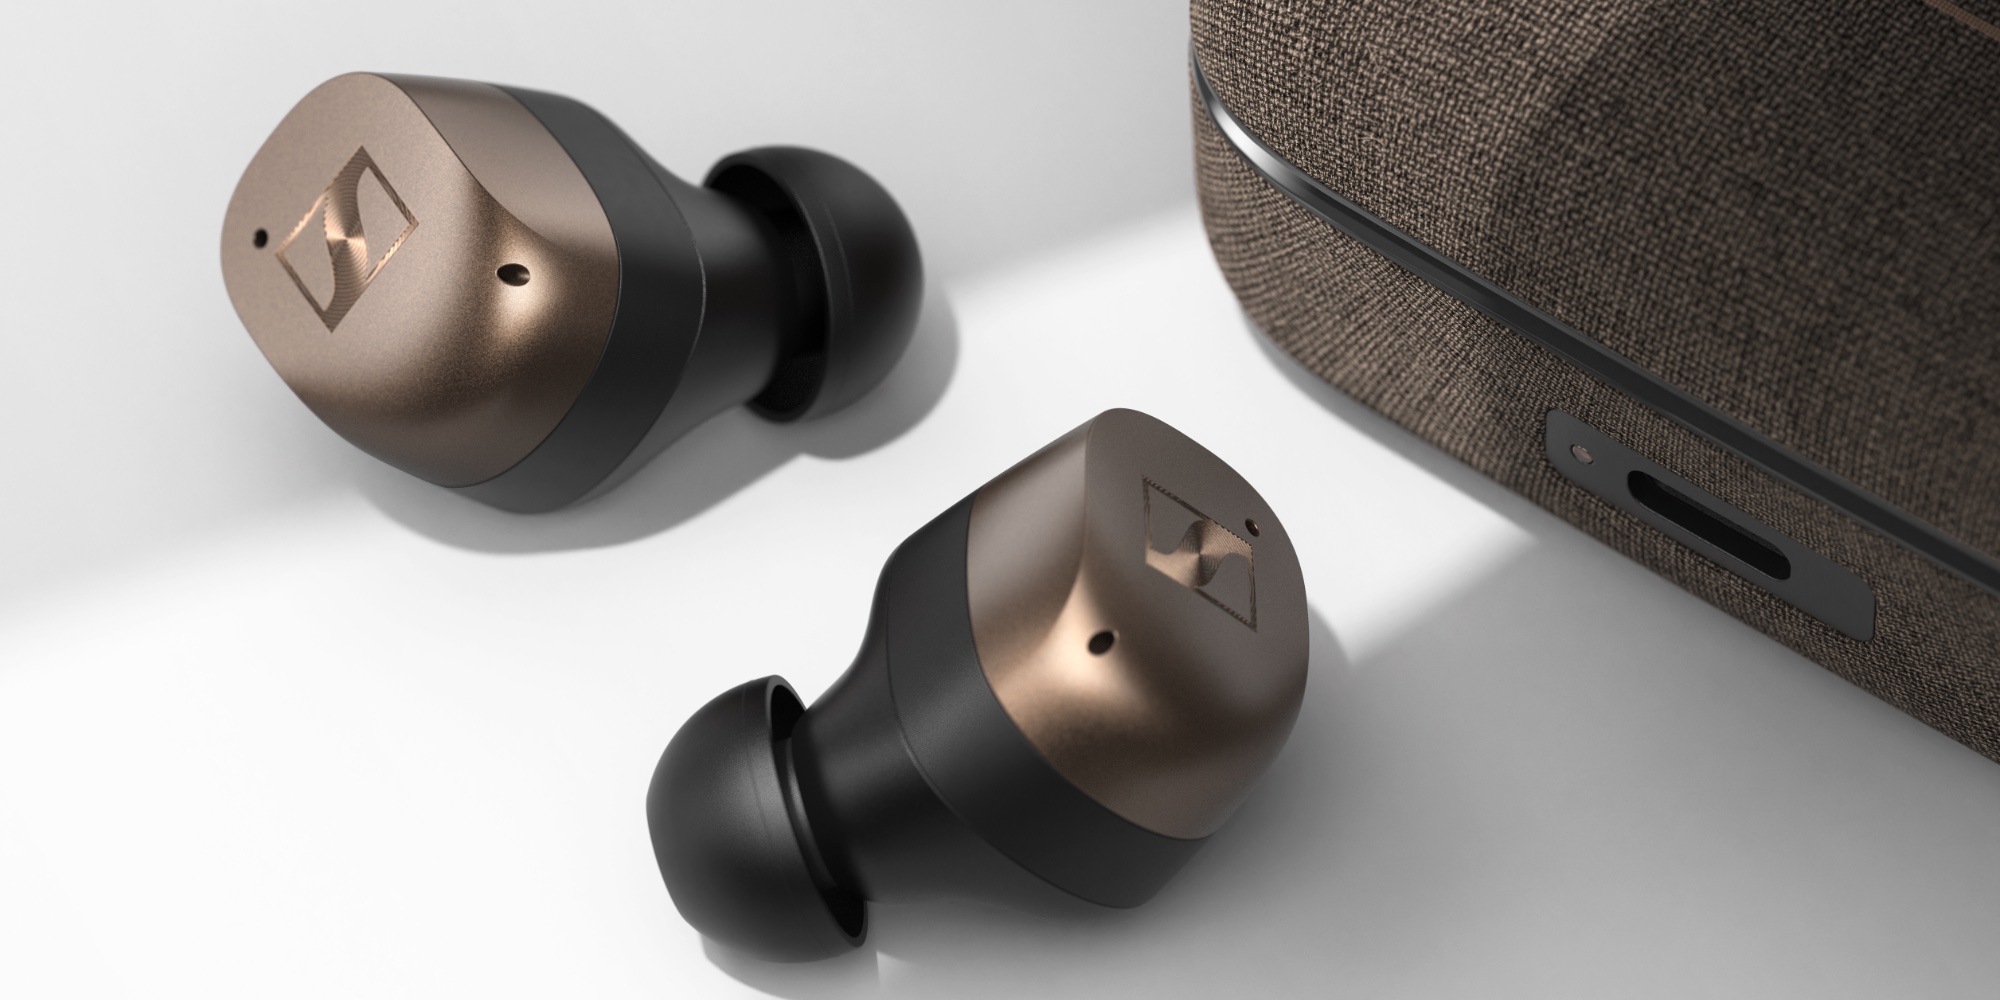 Sennheiser's latest Momentum 4 headphones and 3 earbuds on sale